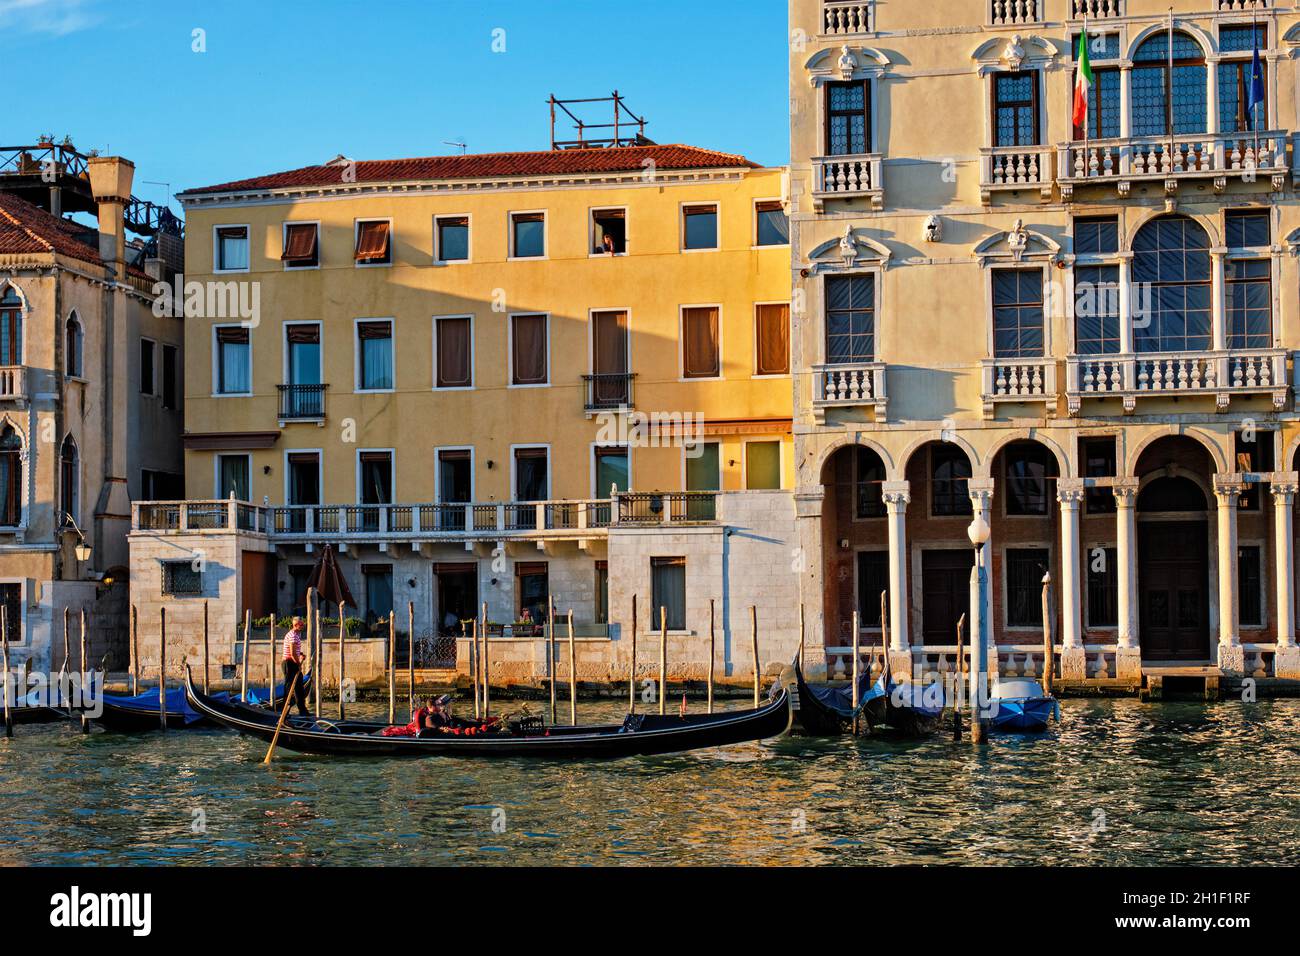 VENISE, ITALIE - 27 JUIN 2018 : Grand Canal avec bateaux et gondoles au coucher du soleil, Venise, Italie Banque D'Images